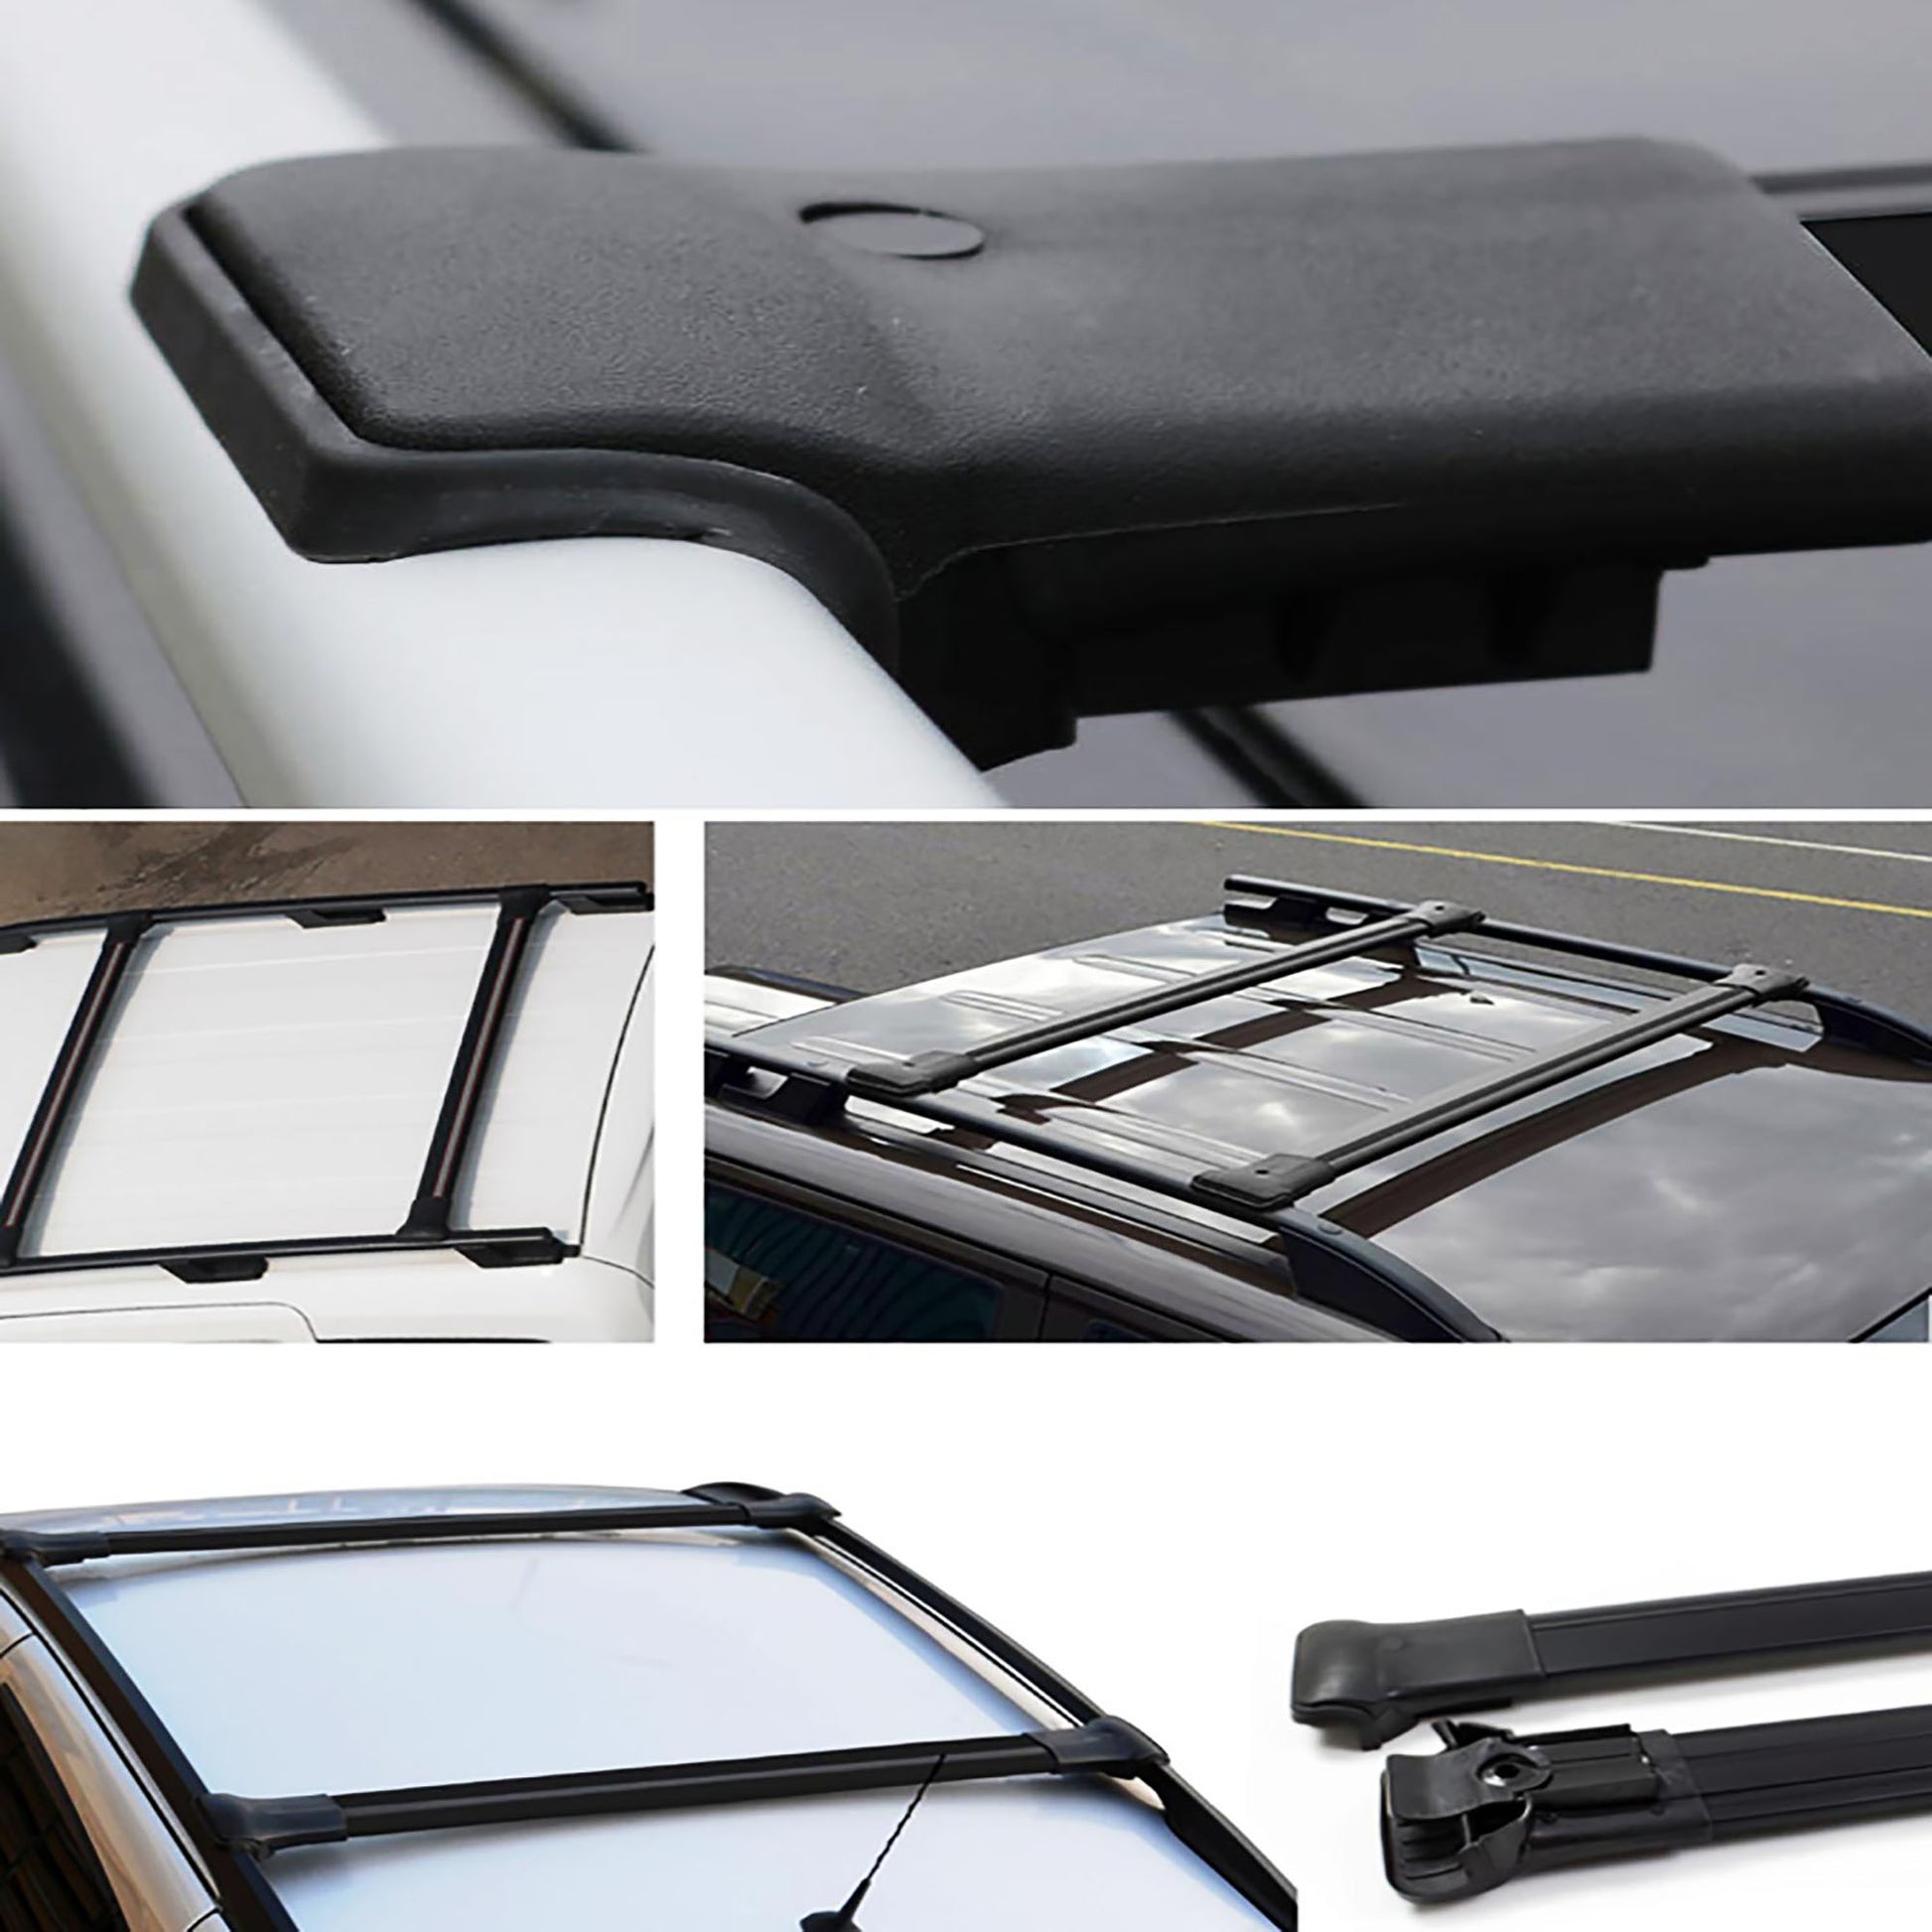 Nissan Qashqai Ara Atkı - Elegance V1 - Siyah Aksesuarları Detaylı Resimleri, Kampanya bilgileri ve fiyatı - 4